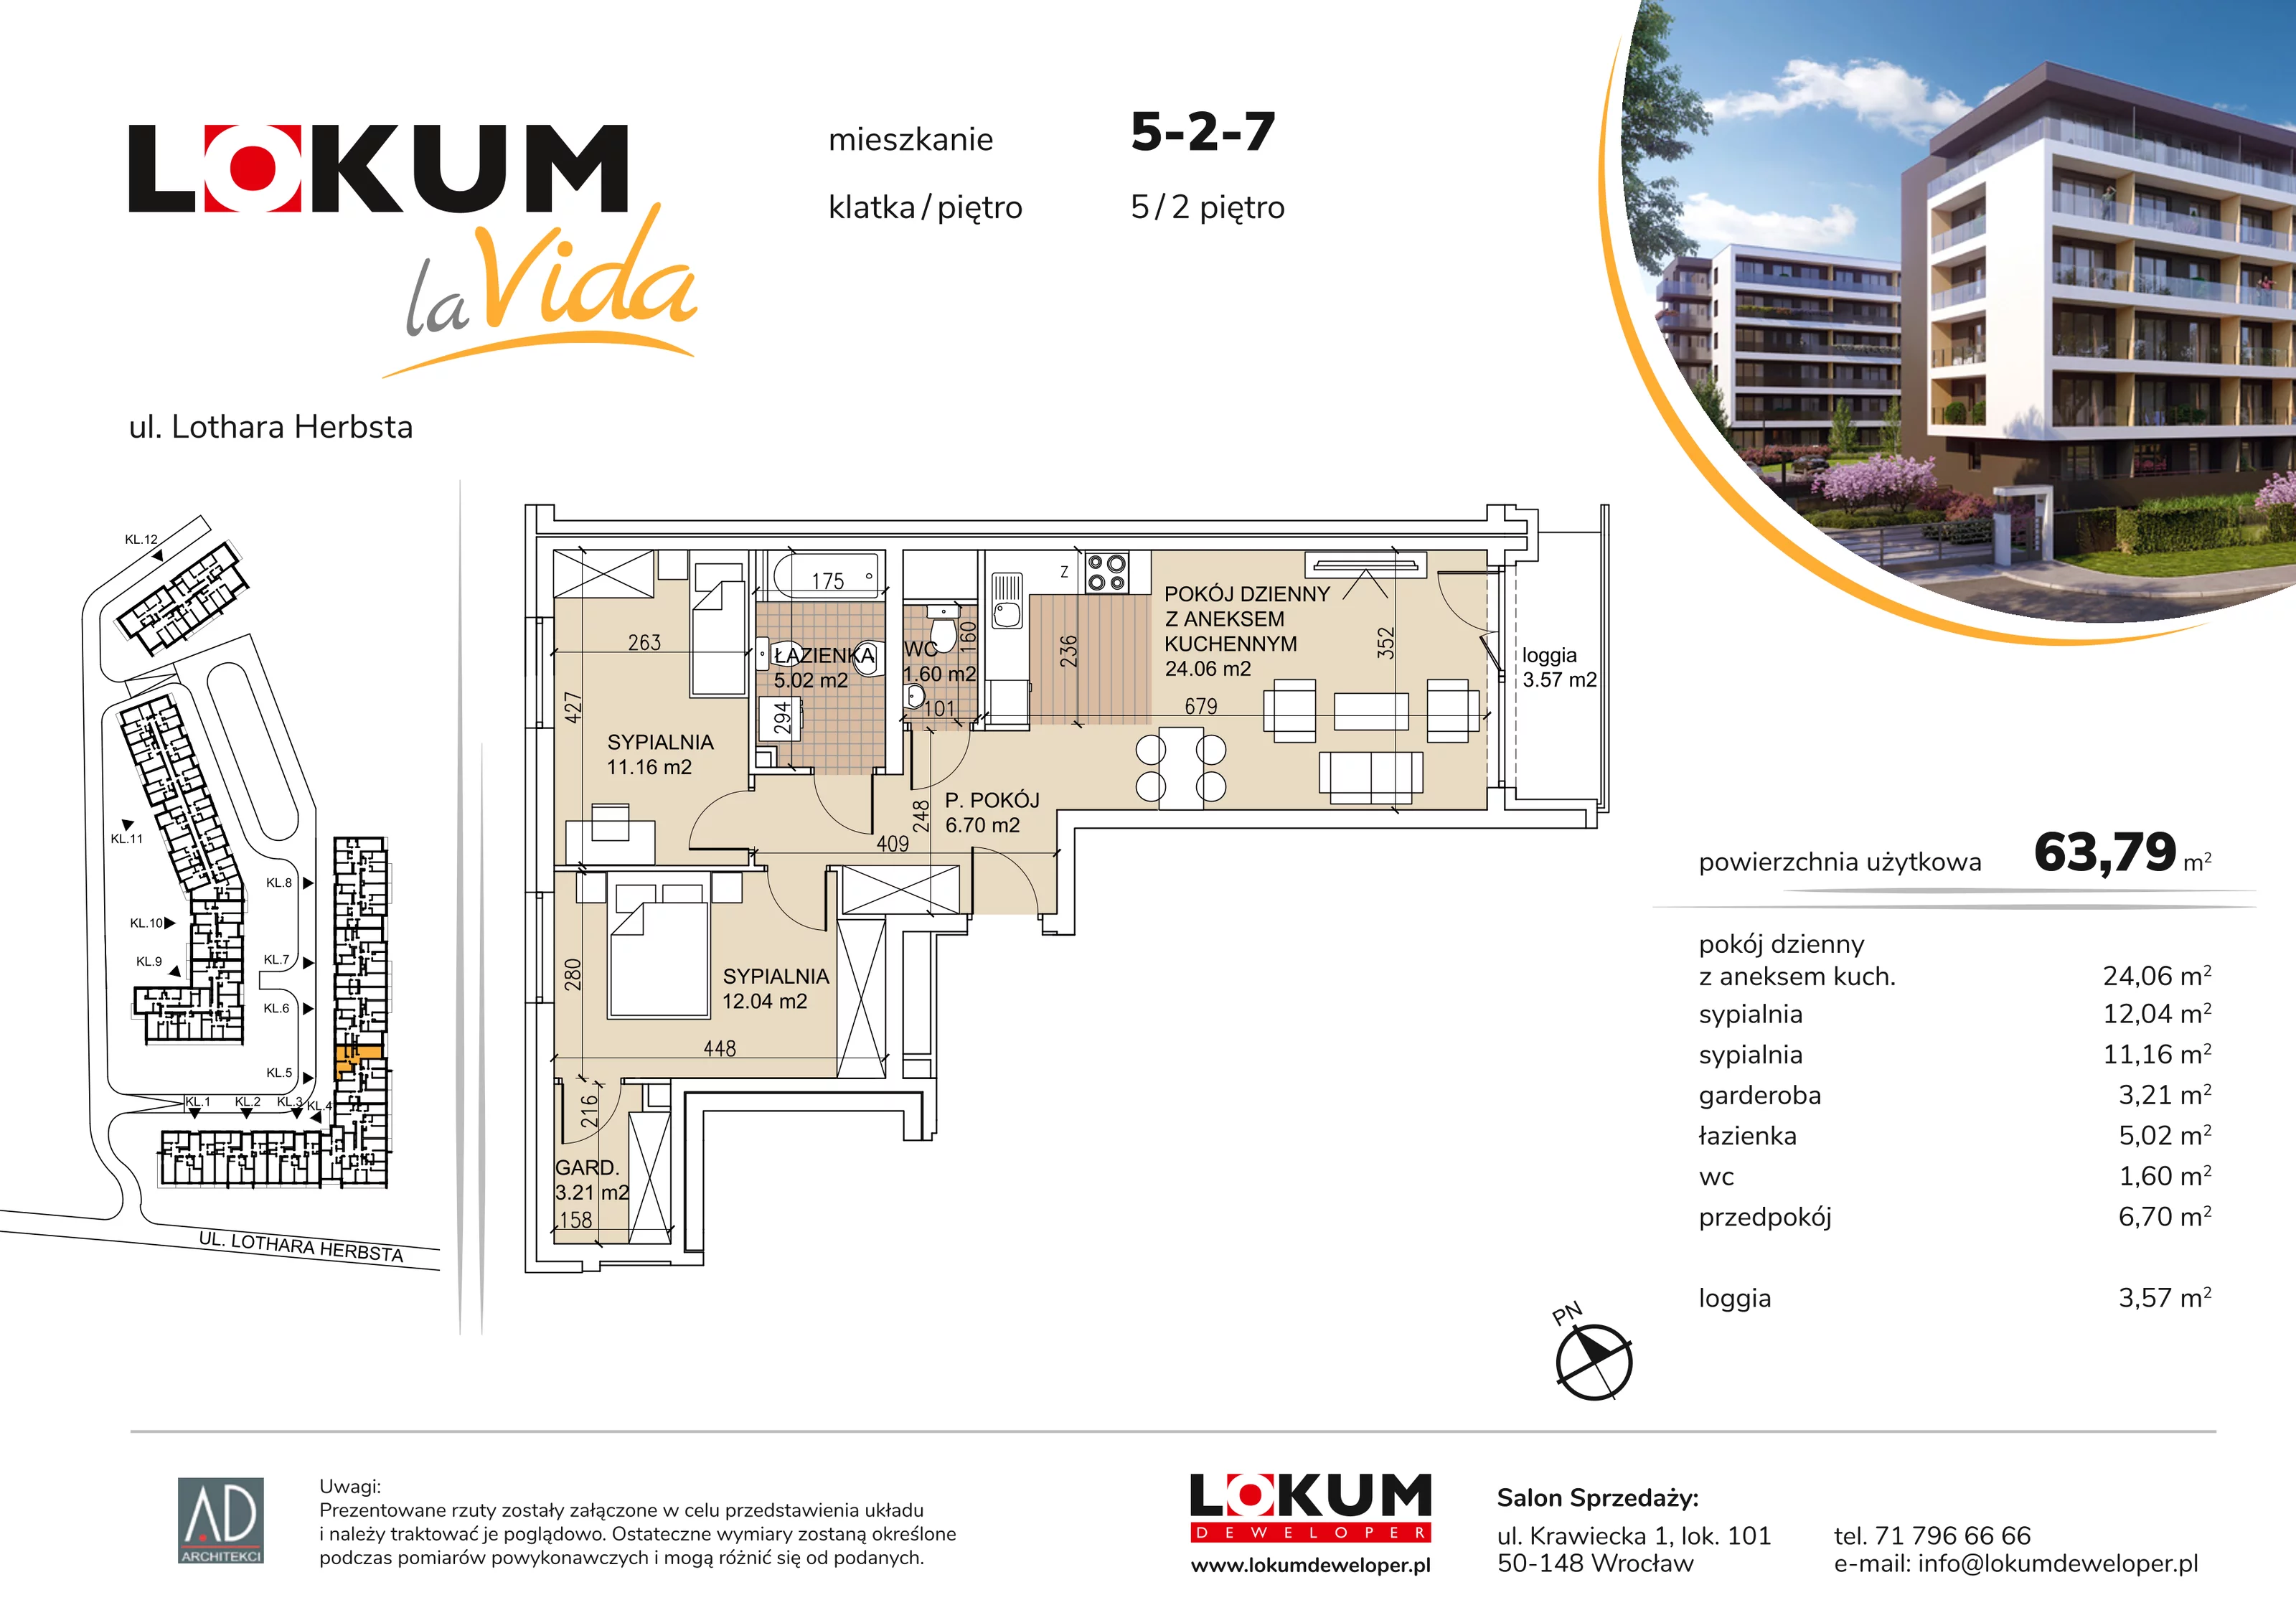 Mieszkanie 63,79 m², piętro 2, oferta nr 5-2-7, Lokum la Vida, Wrocław, Sołtysowice, ul. Lothara Herbsta